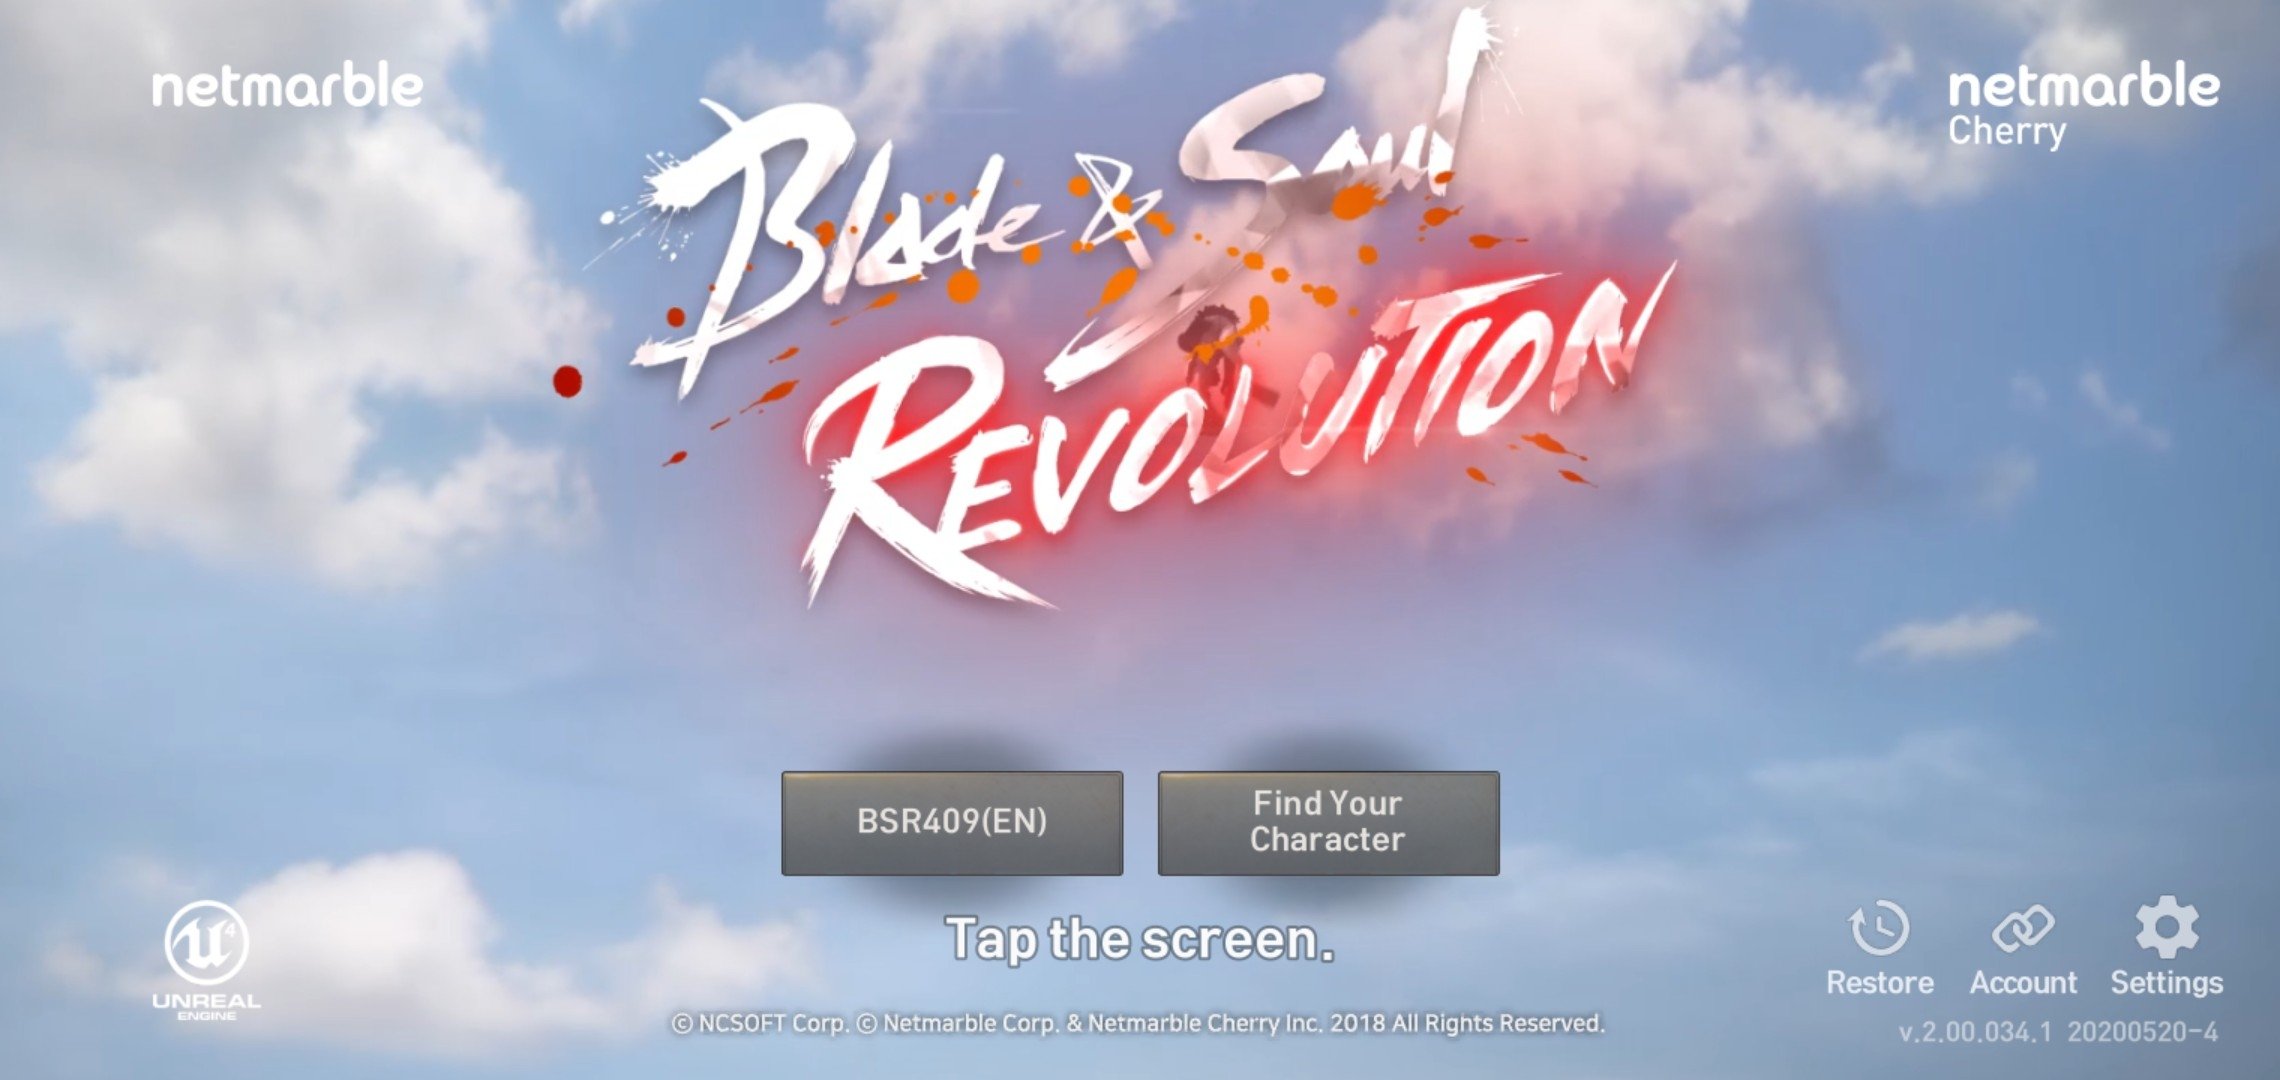 Blade Soul Revolution 2 00 034 1 Android用ダウンロードapk無料